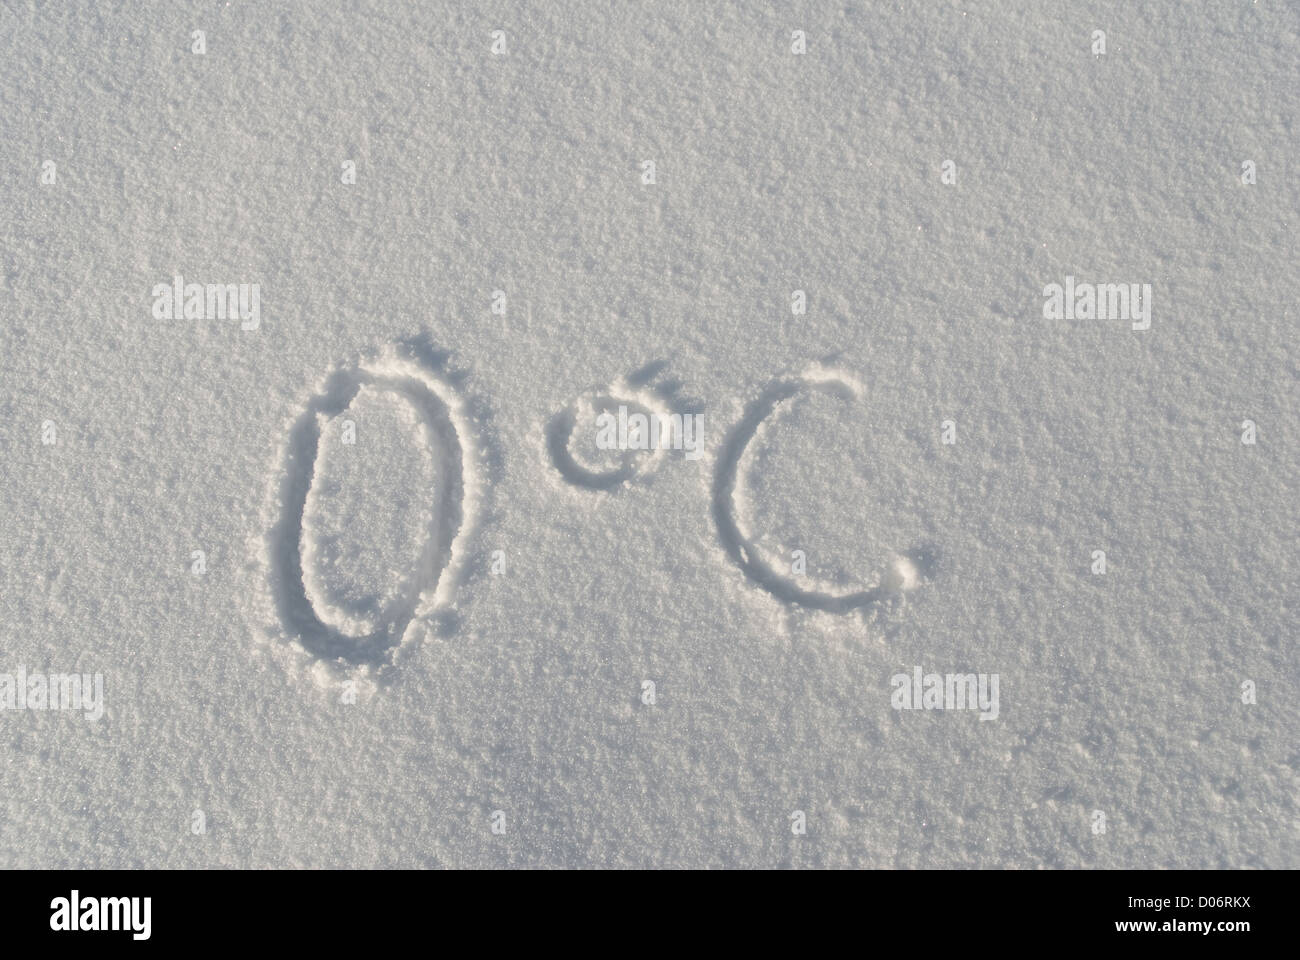 Zero degree Celsius imprint in snow Stock Photo